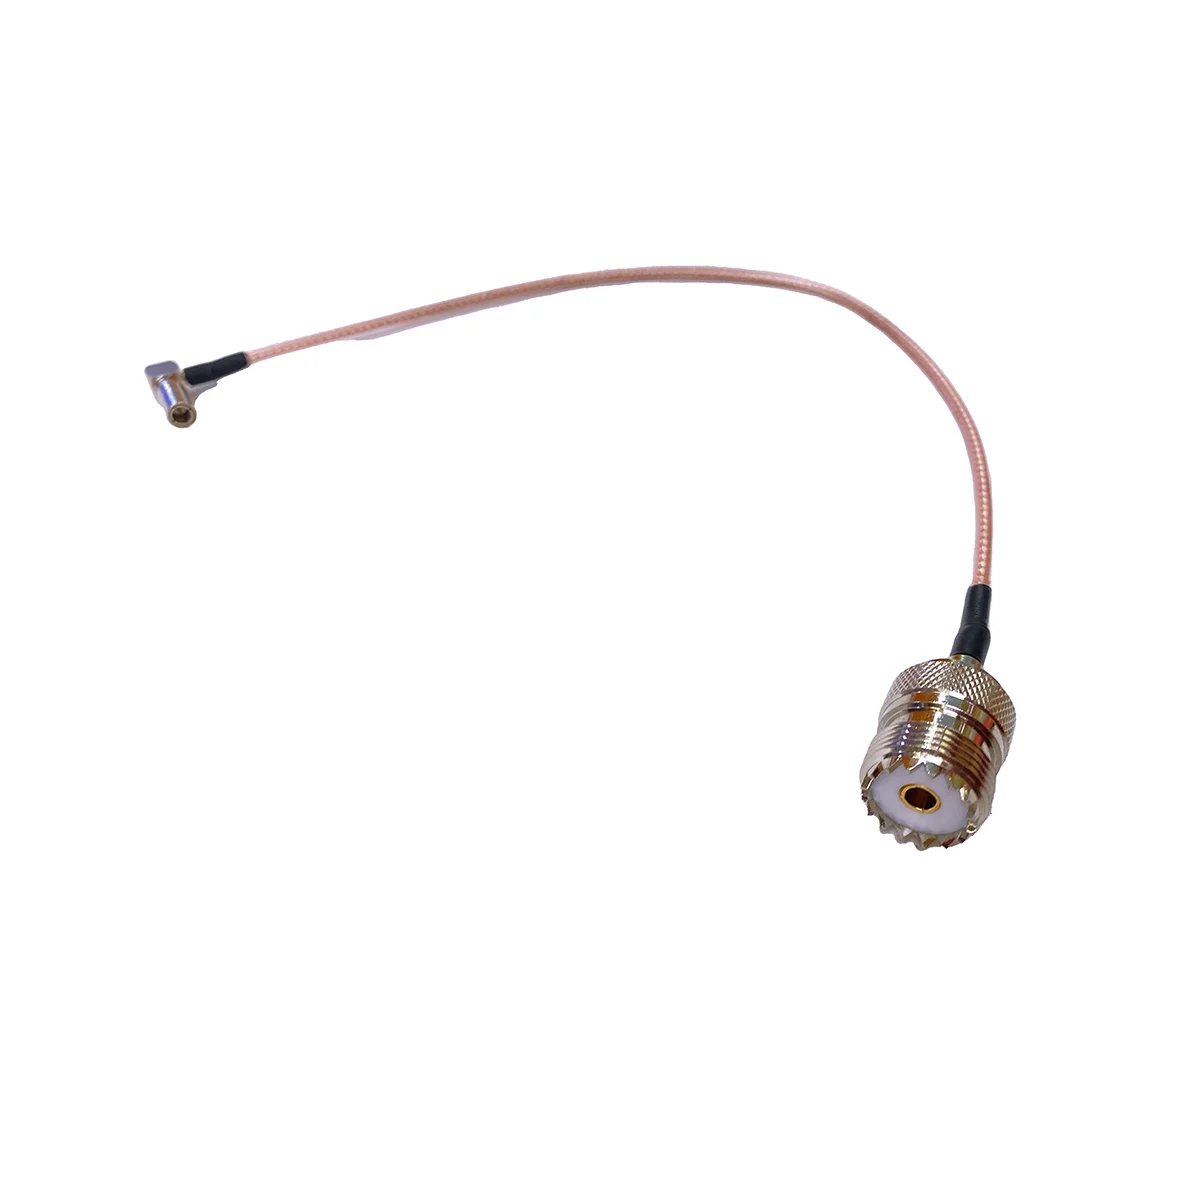 

Специальный испытательный линейный соединительный кабель, шнур м мама для XIR P8668 P8660 P8608, аксессуары для радиостанций и раций